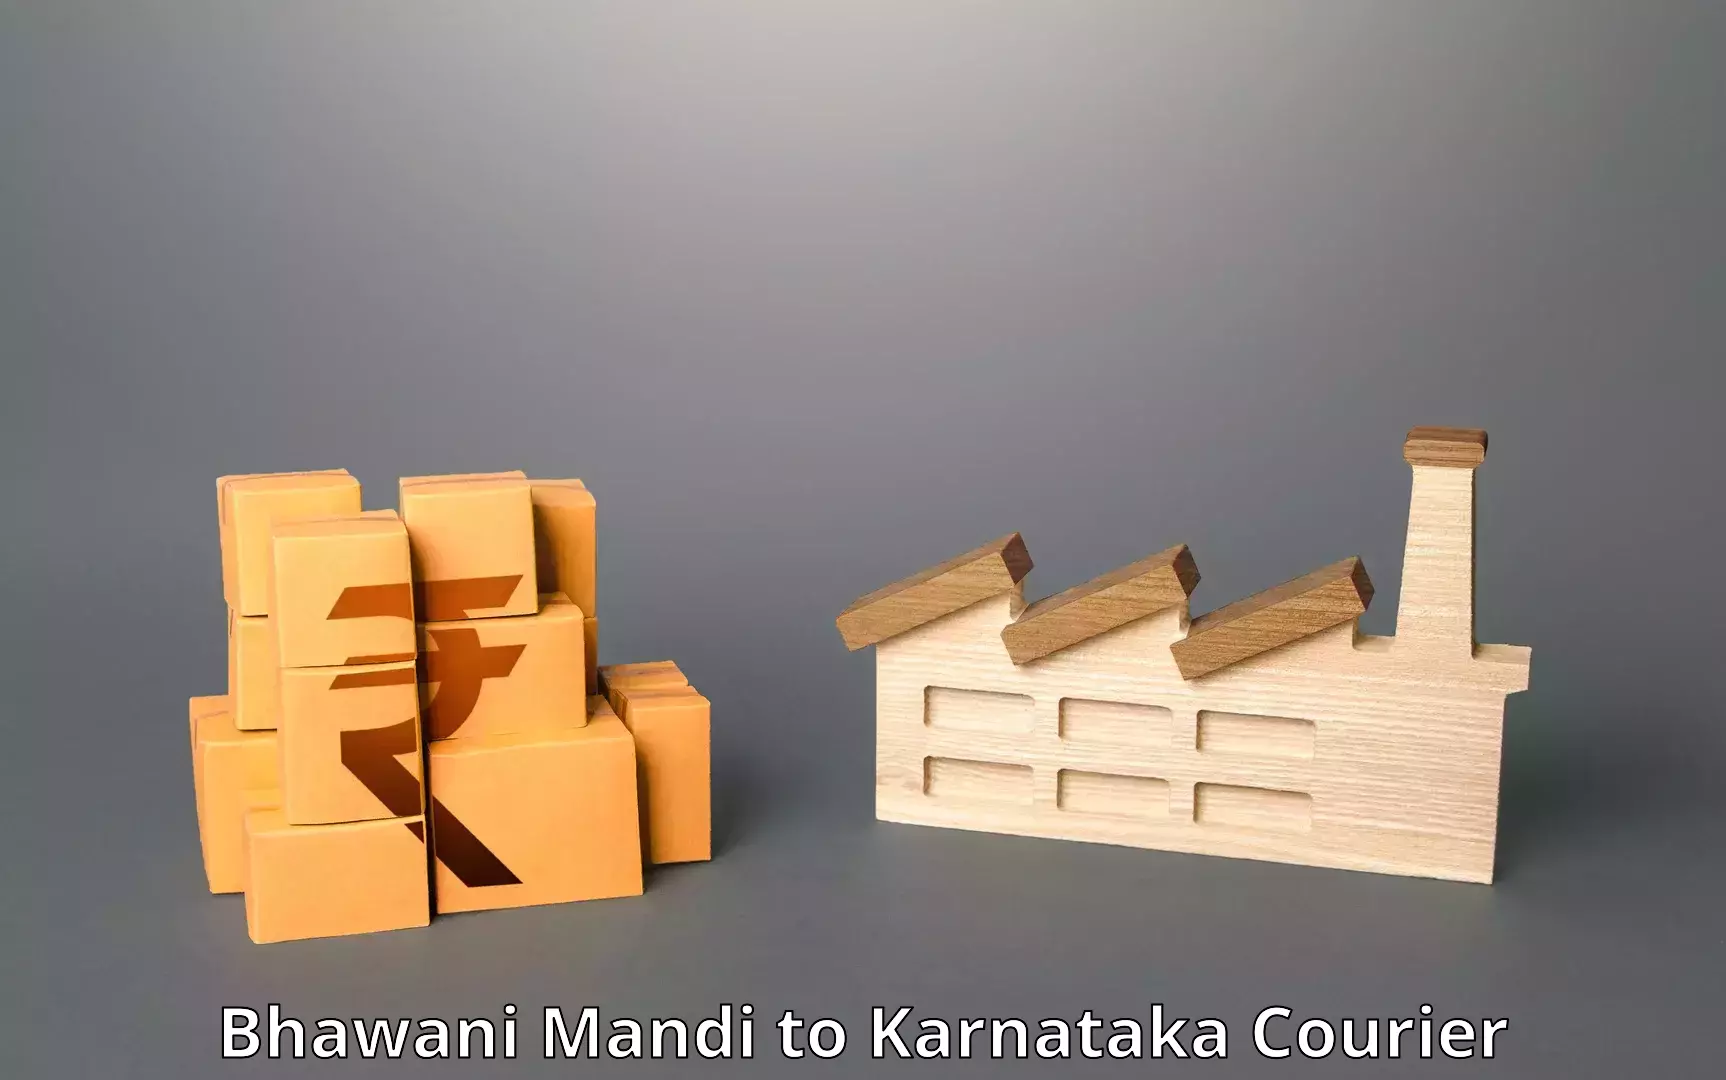 Global shipping networks Bhawani Mandi to Manvi